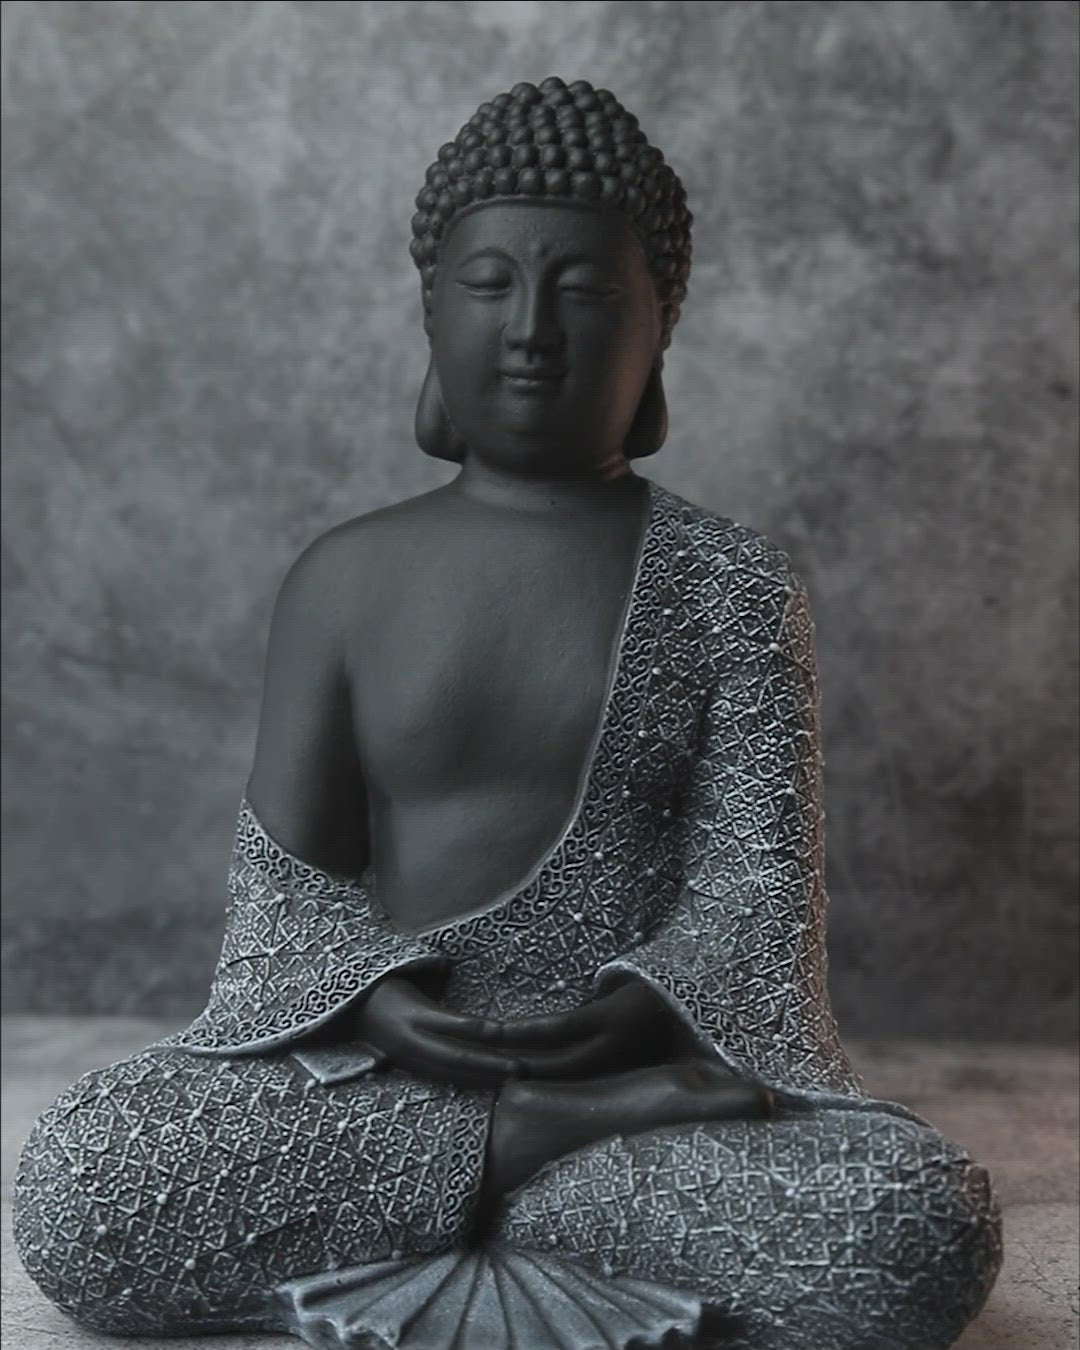 Buddha Figur 'Sumatra' 29 cm 4.5 kg